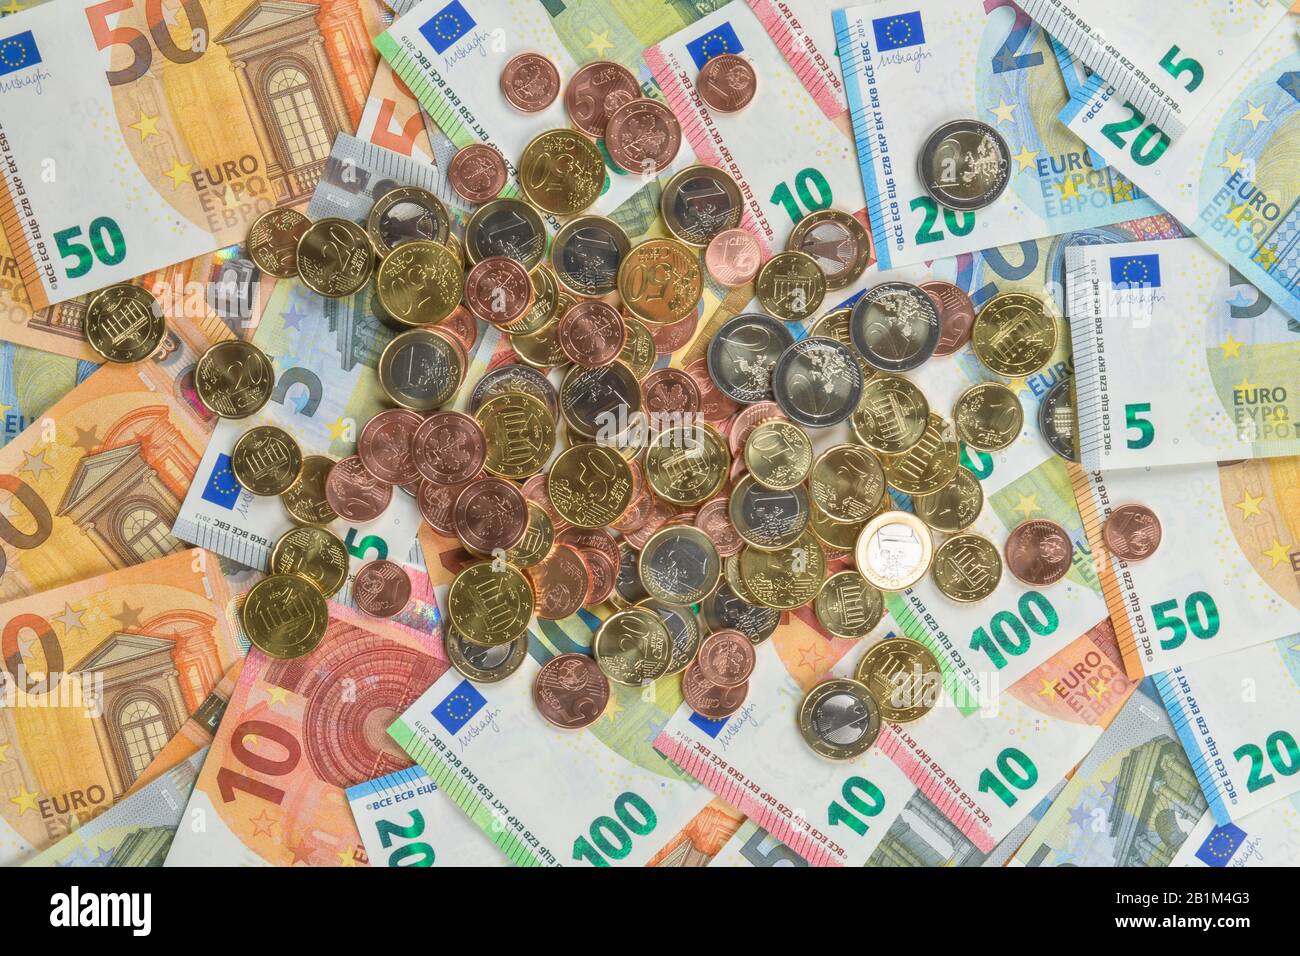 Centmünzen, Euromünzen, Euroscheine, Studioaufnahme Stock Photo